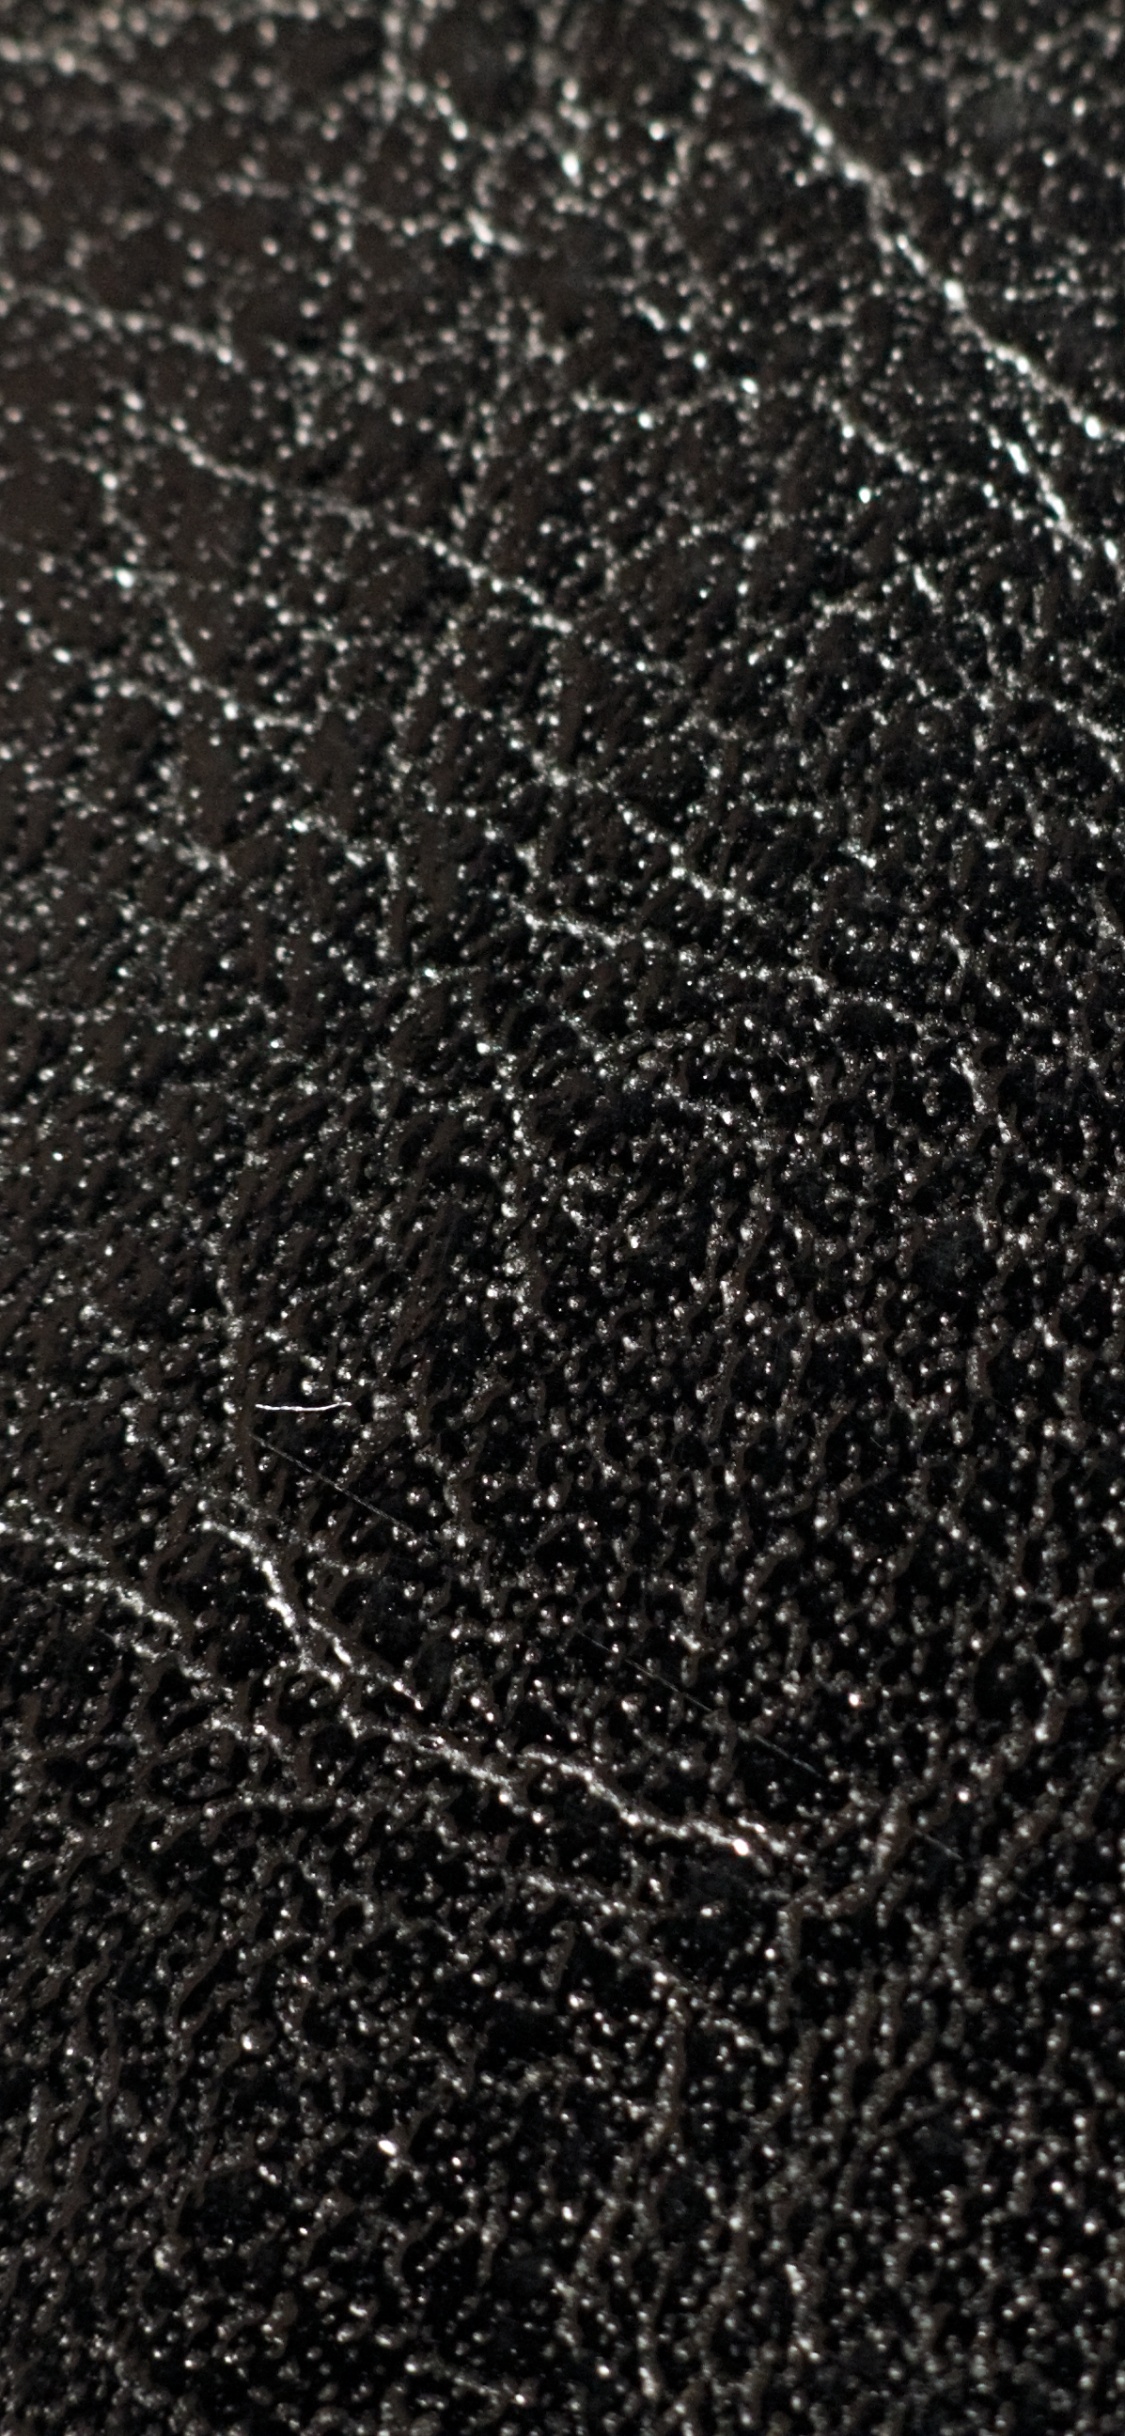 Textil de Cuero Negro en Fotografía de Cerca. Wallpaper in 1125x2436 Resolution